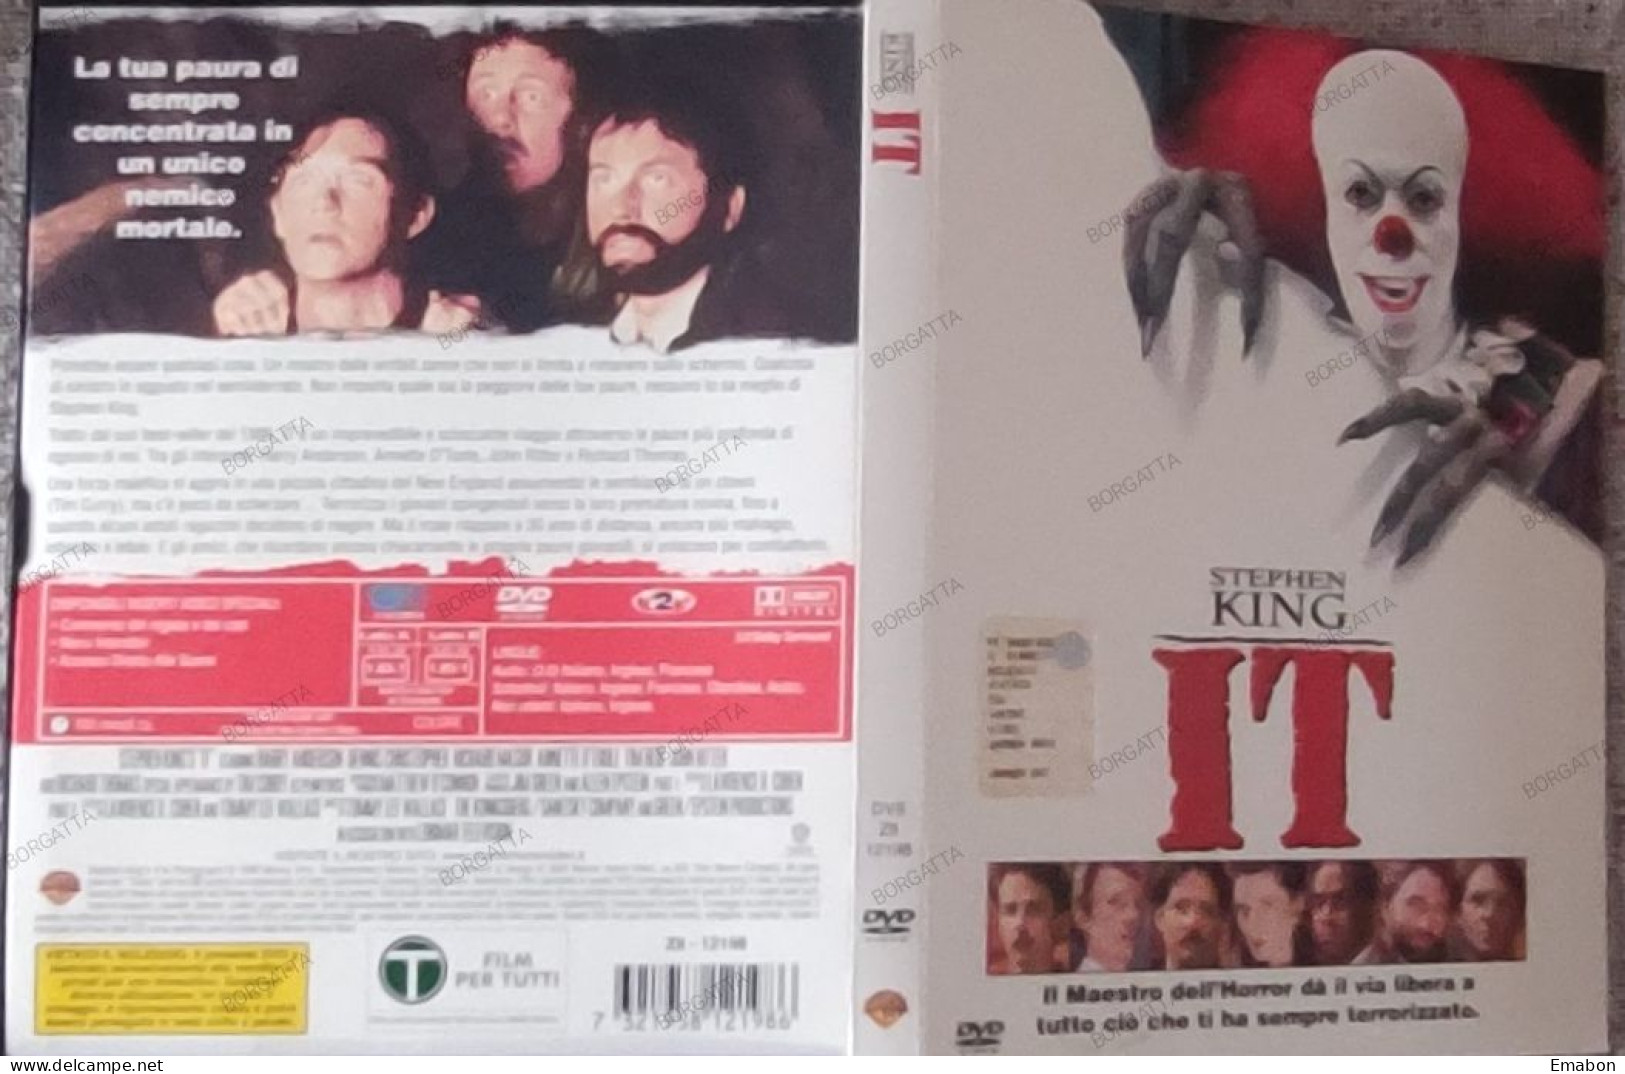 BORGATTA - HORROR - Dvd " IT "- STEPHEN KING - PAL 2 - WARNER 2003 -  USATO In Buono Stato - Horror